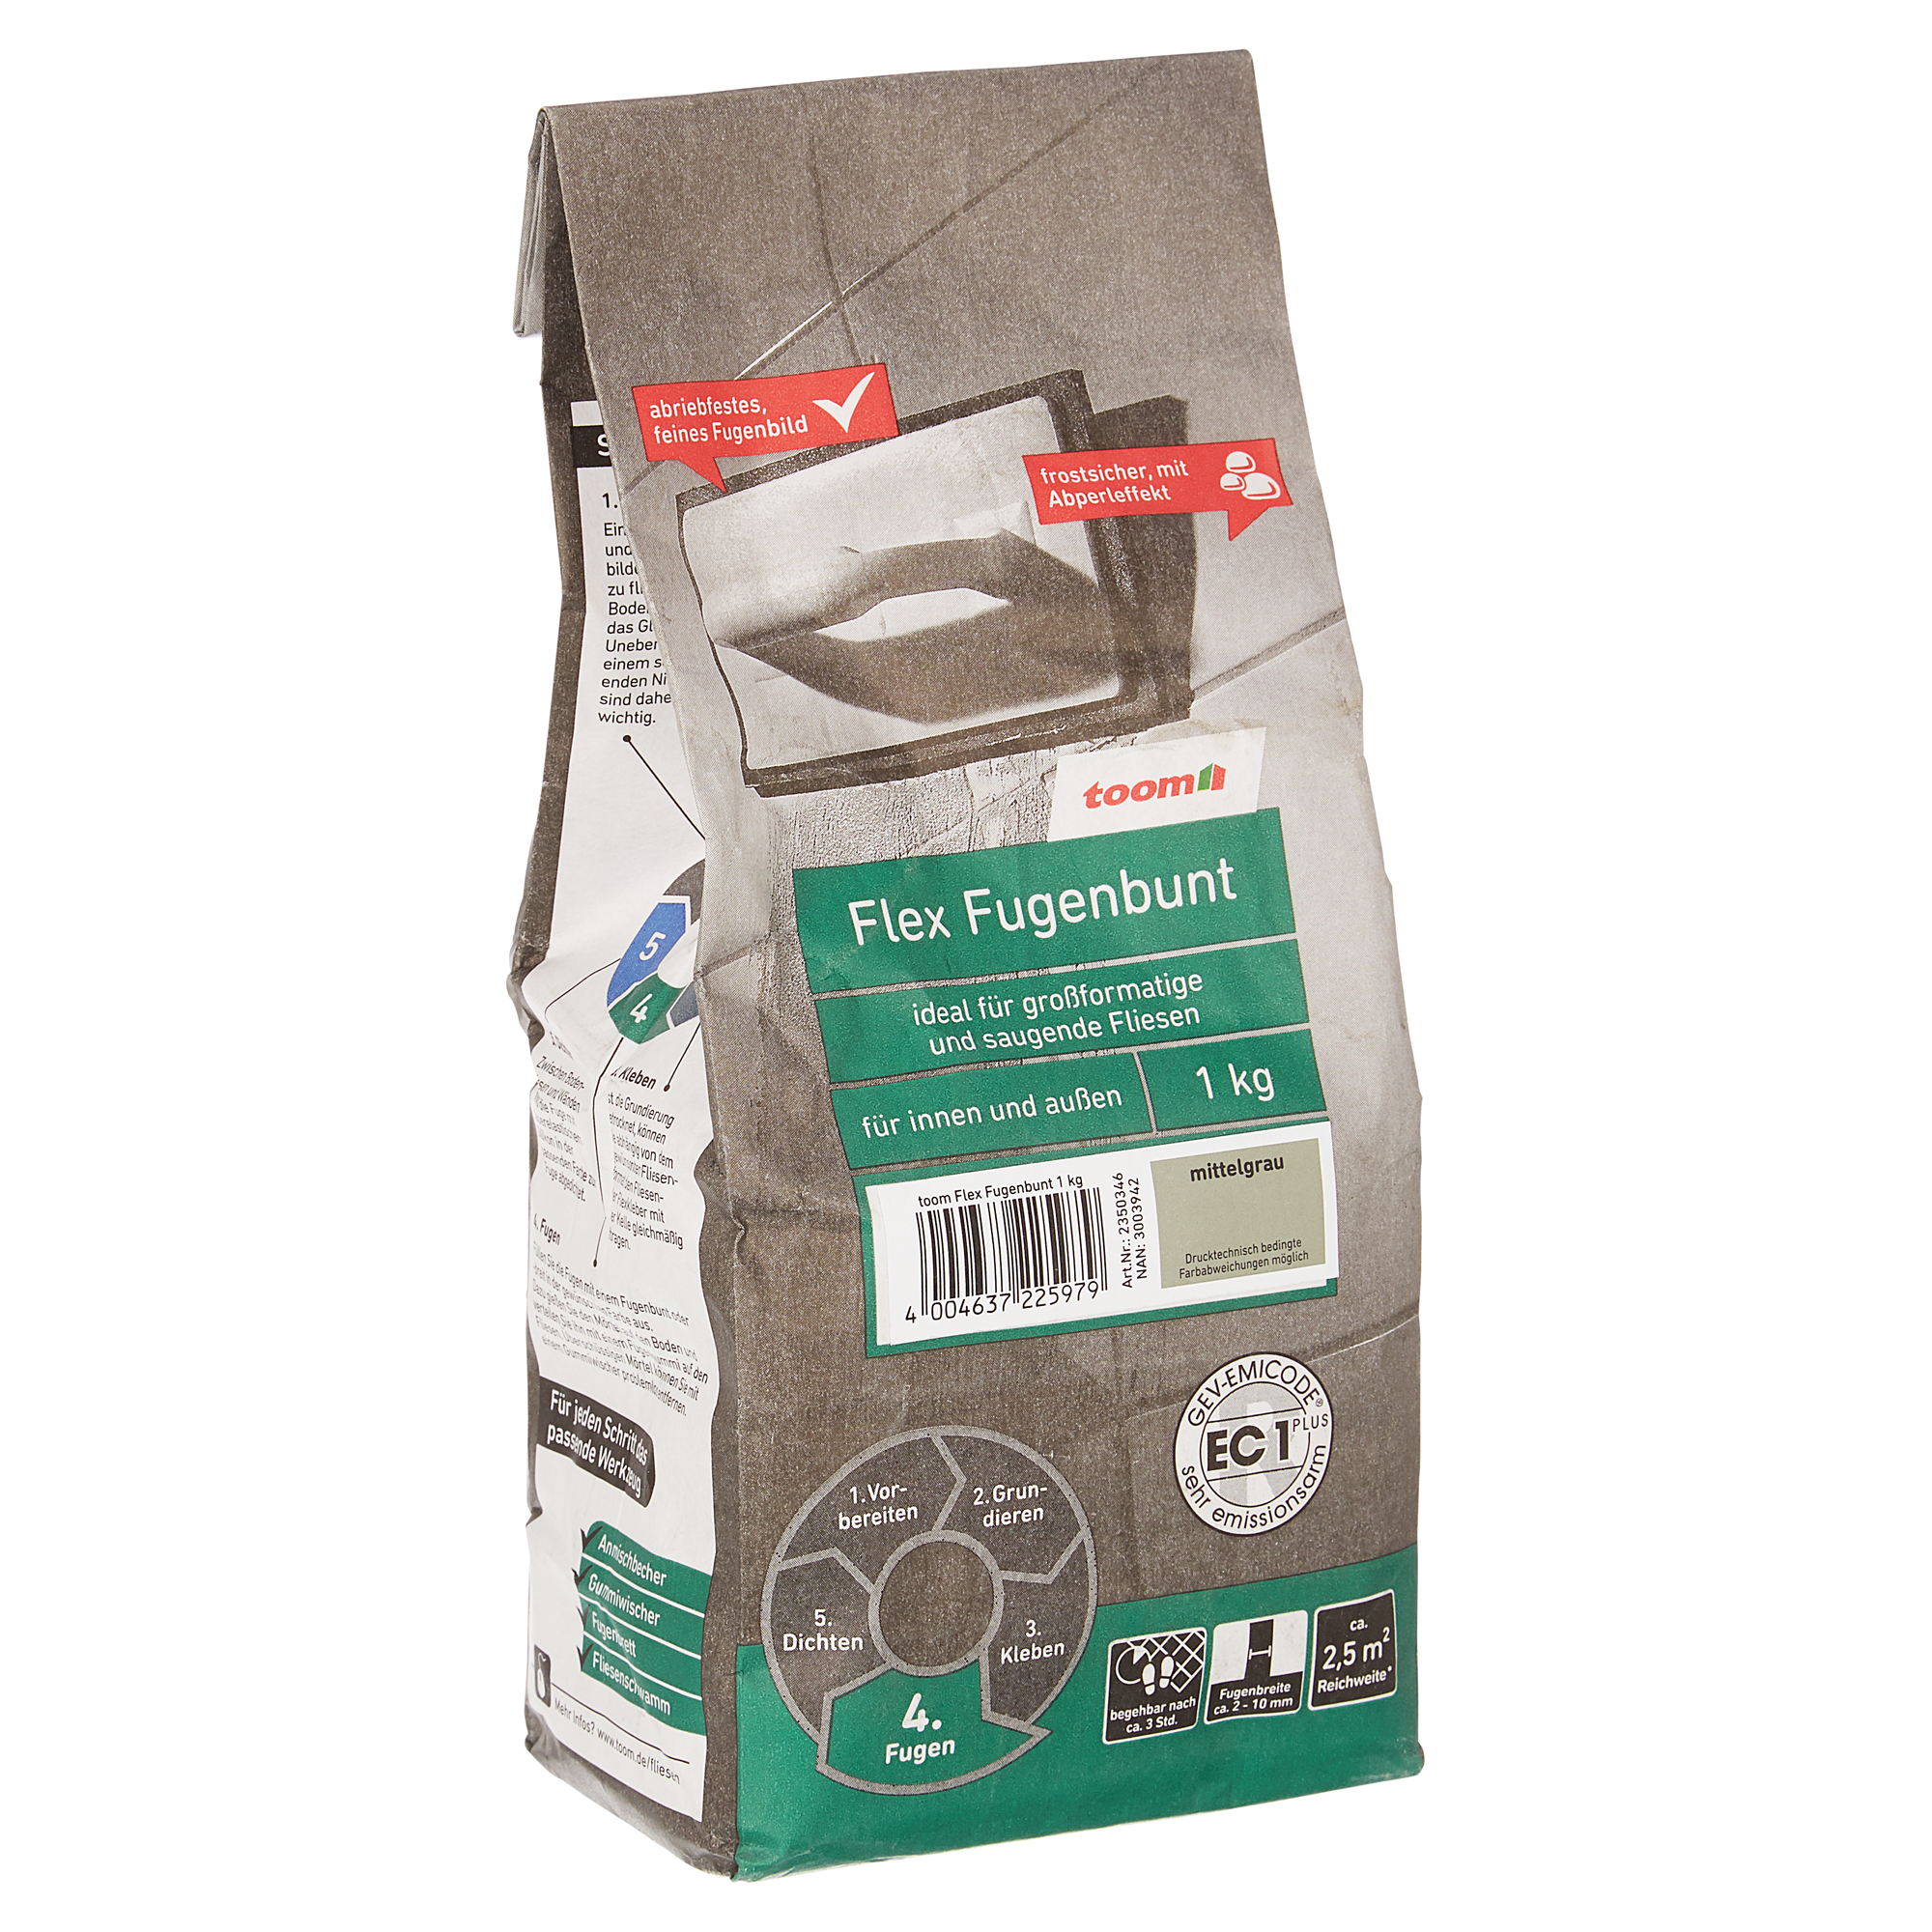 Flex-Fugenbunt grau 1 kg + product picture